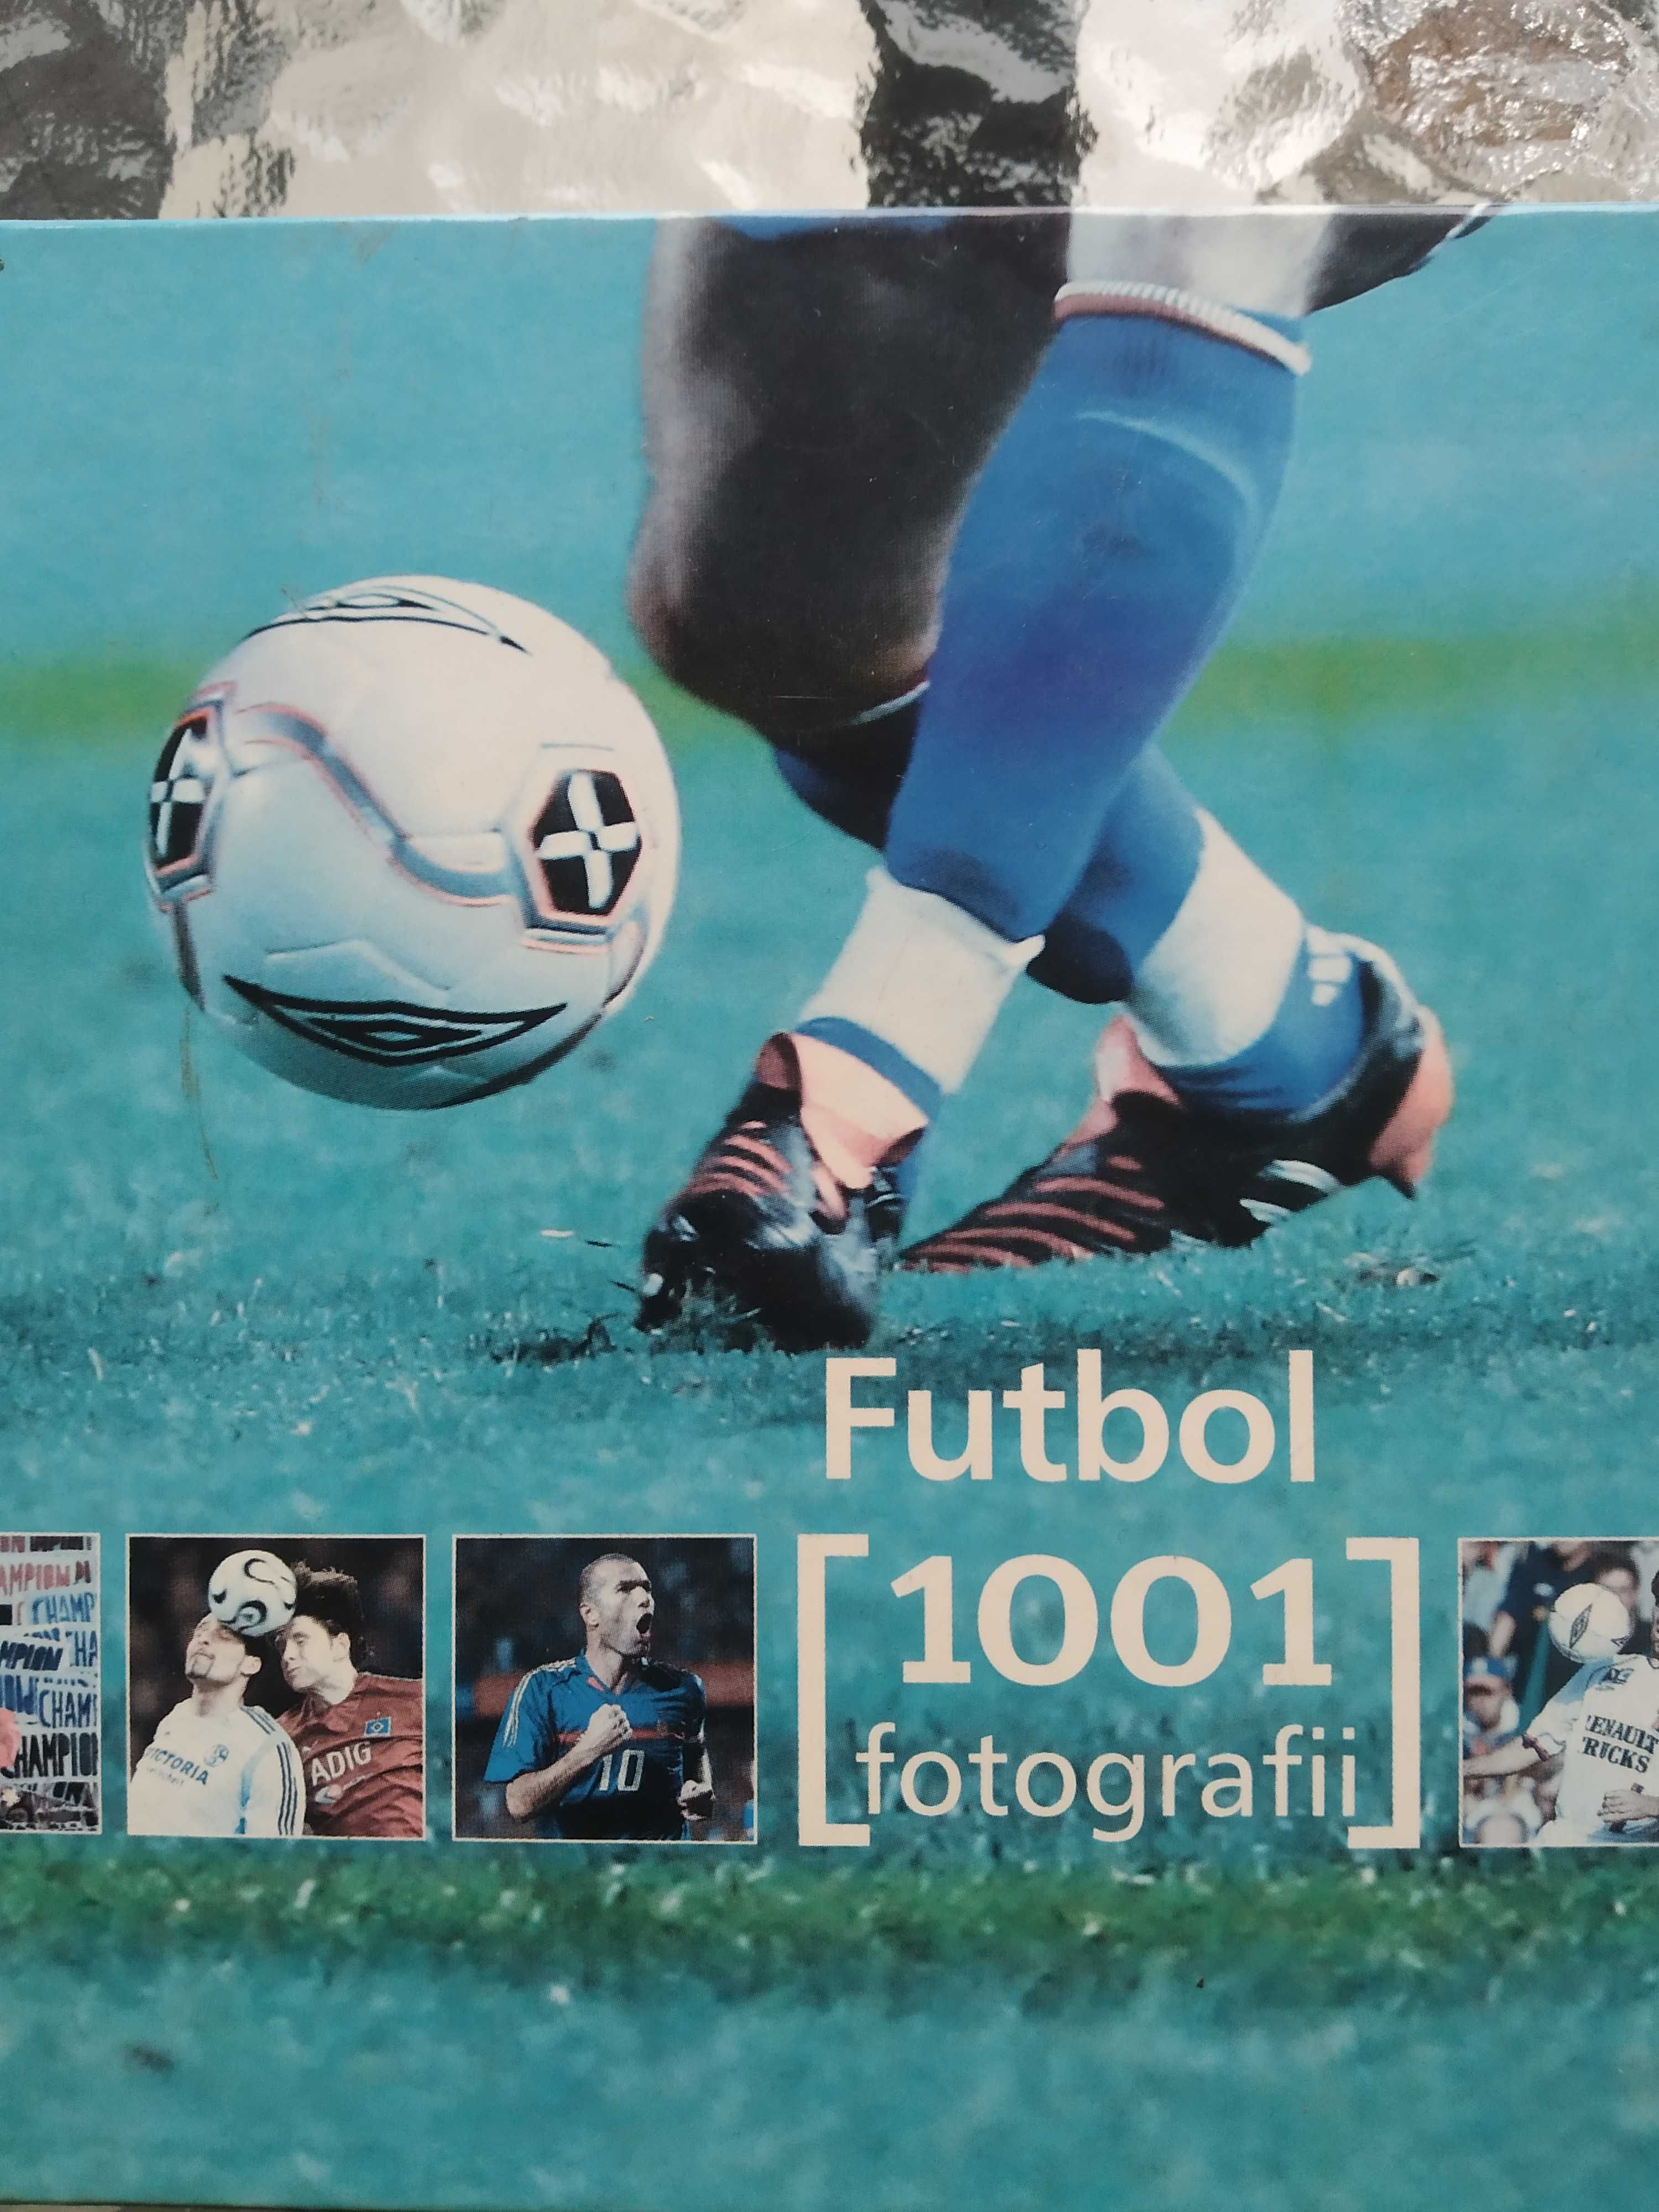 Futbol 1001 Fotografii powystawowa Nowa